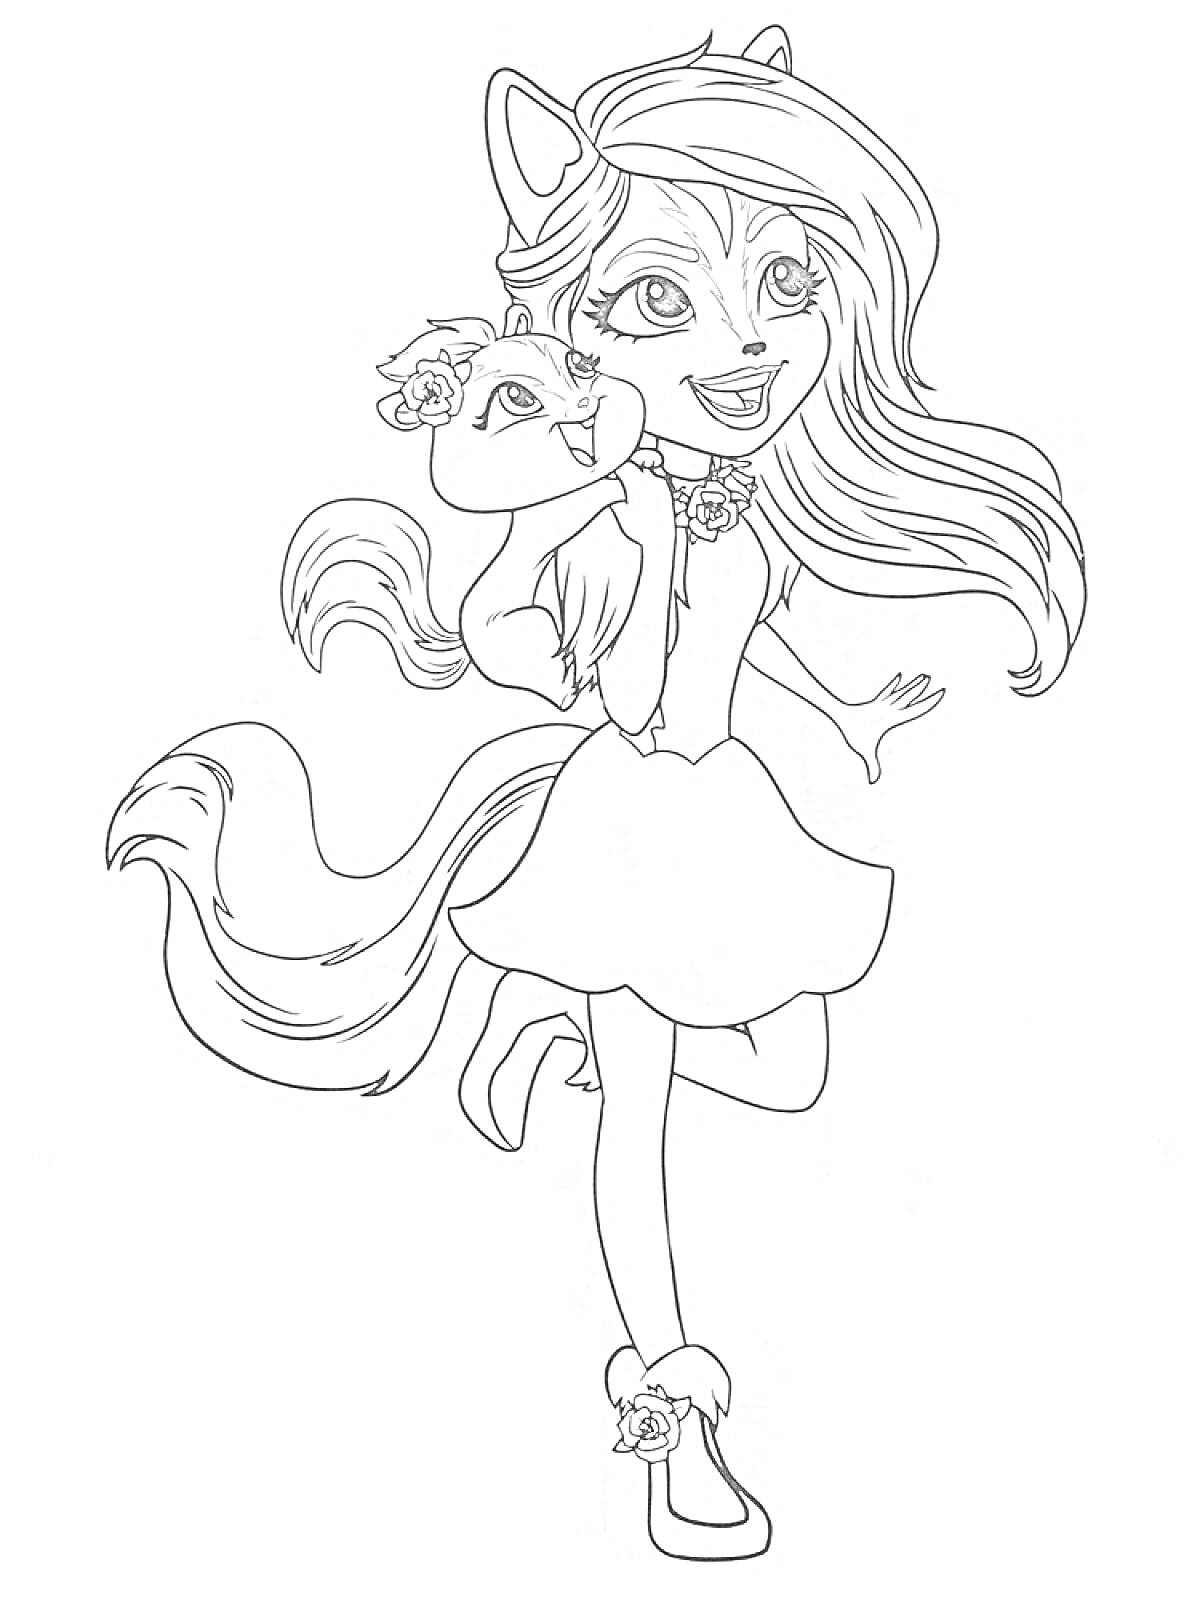 Раскраска Девочка-энчантималс с ушками, держит животное, одета в платье и туфельки с мехом